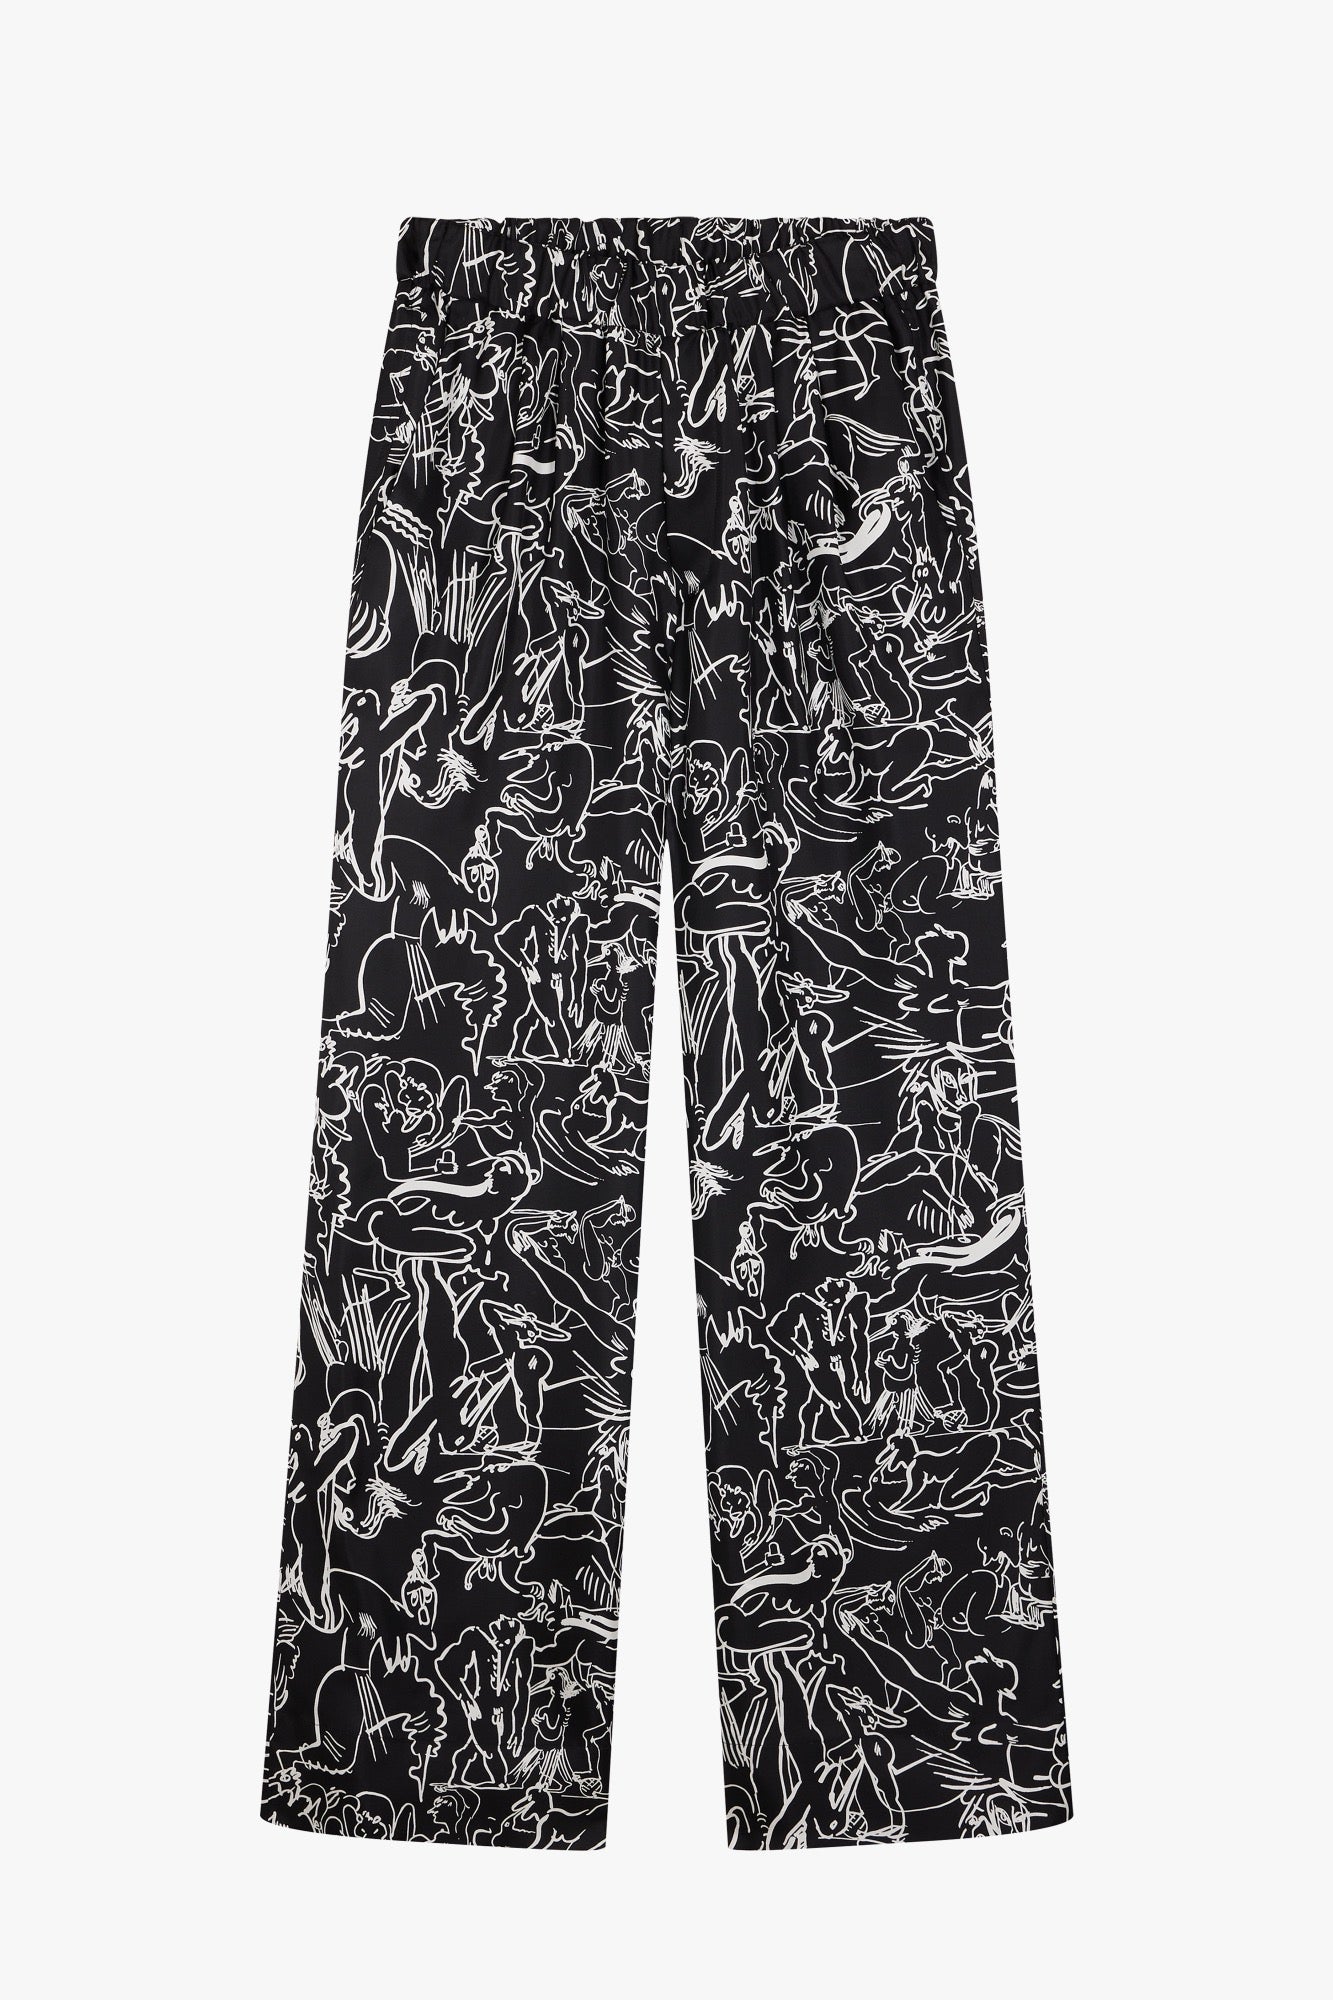 Camille Henrot Artwork Black Trousers